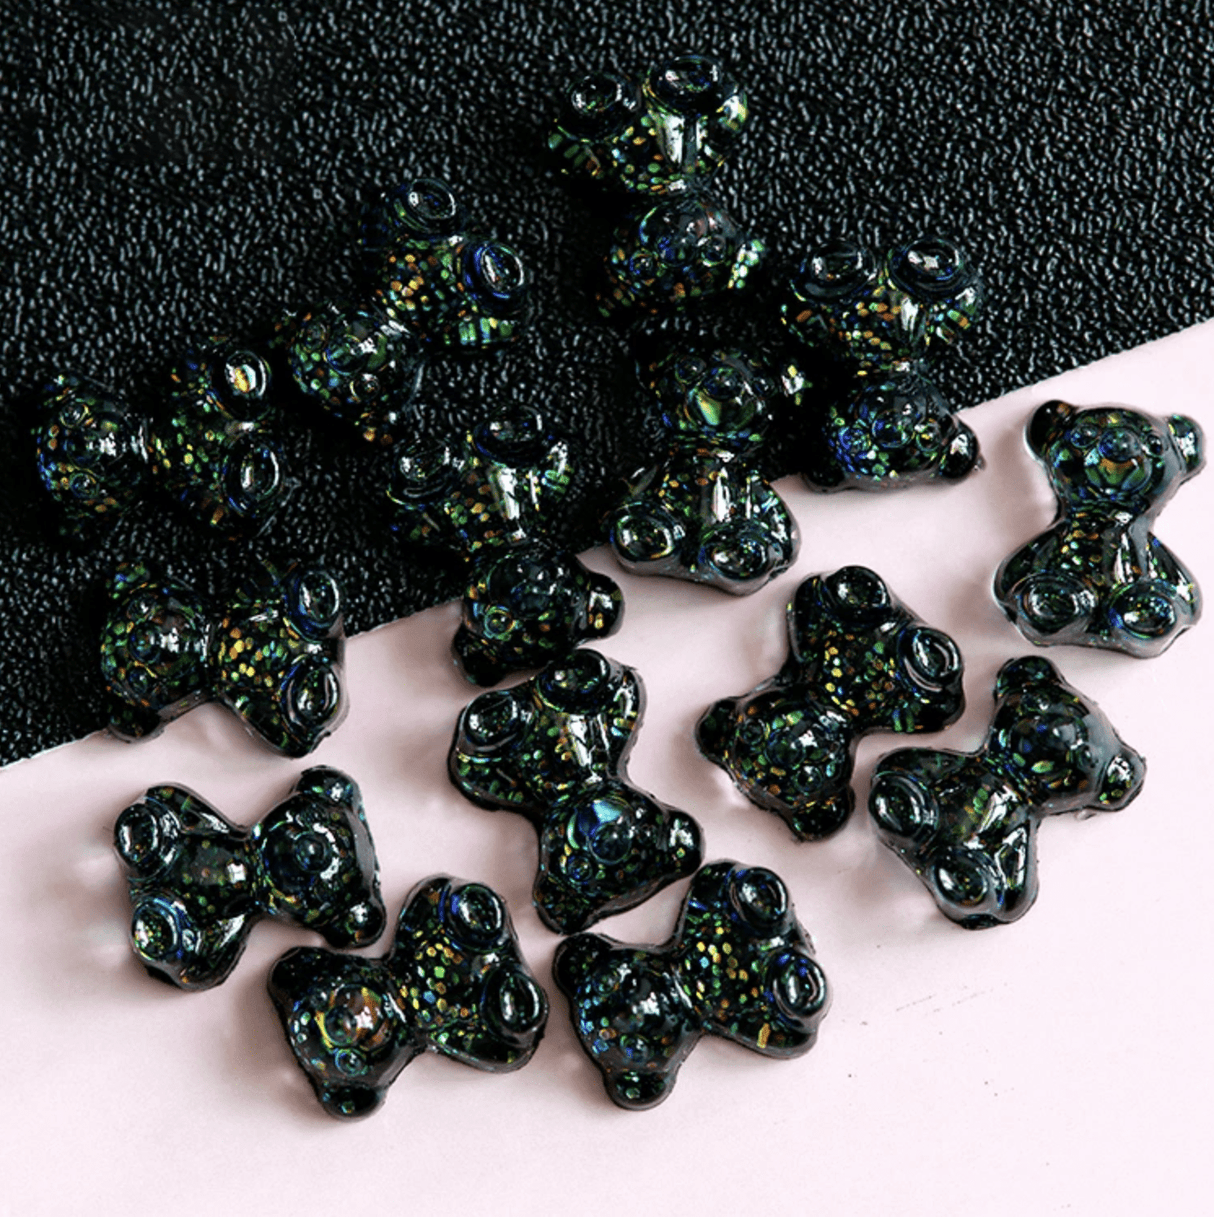 JNBS 3D Kawaii Charm Art Glitter Gummy Bear (Jar of 3 pcs) 1